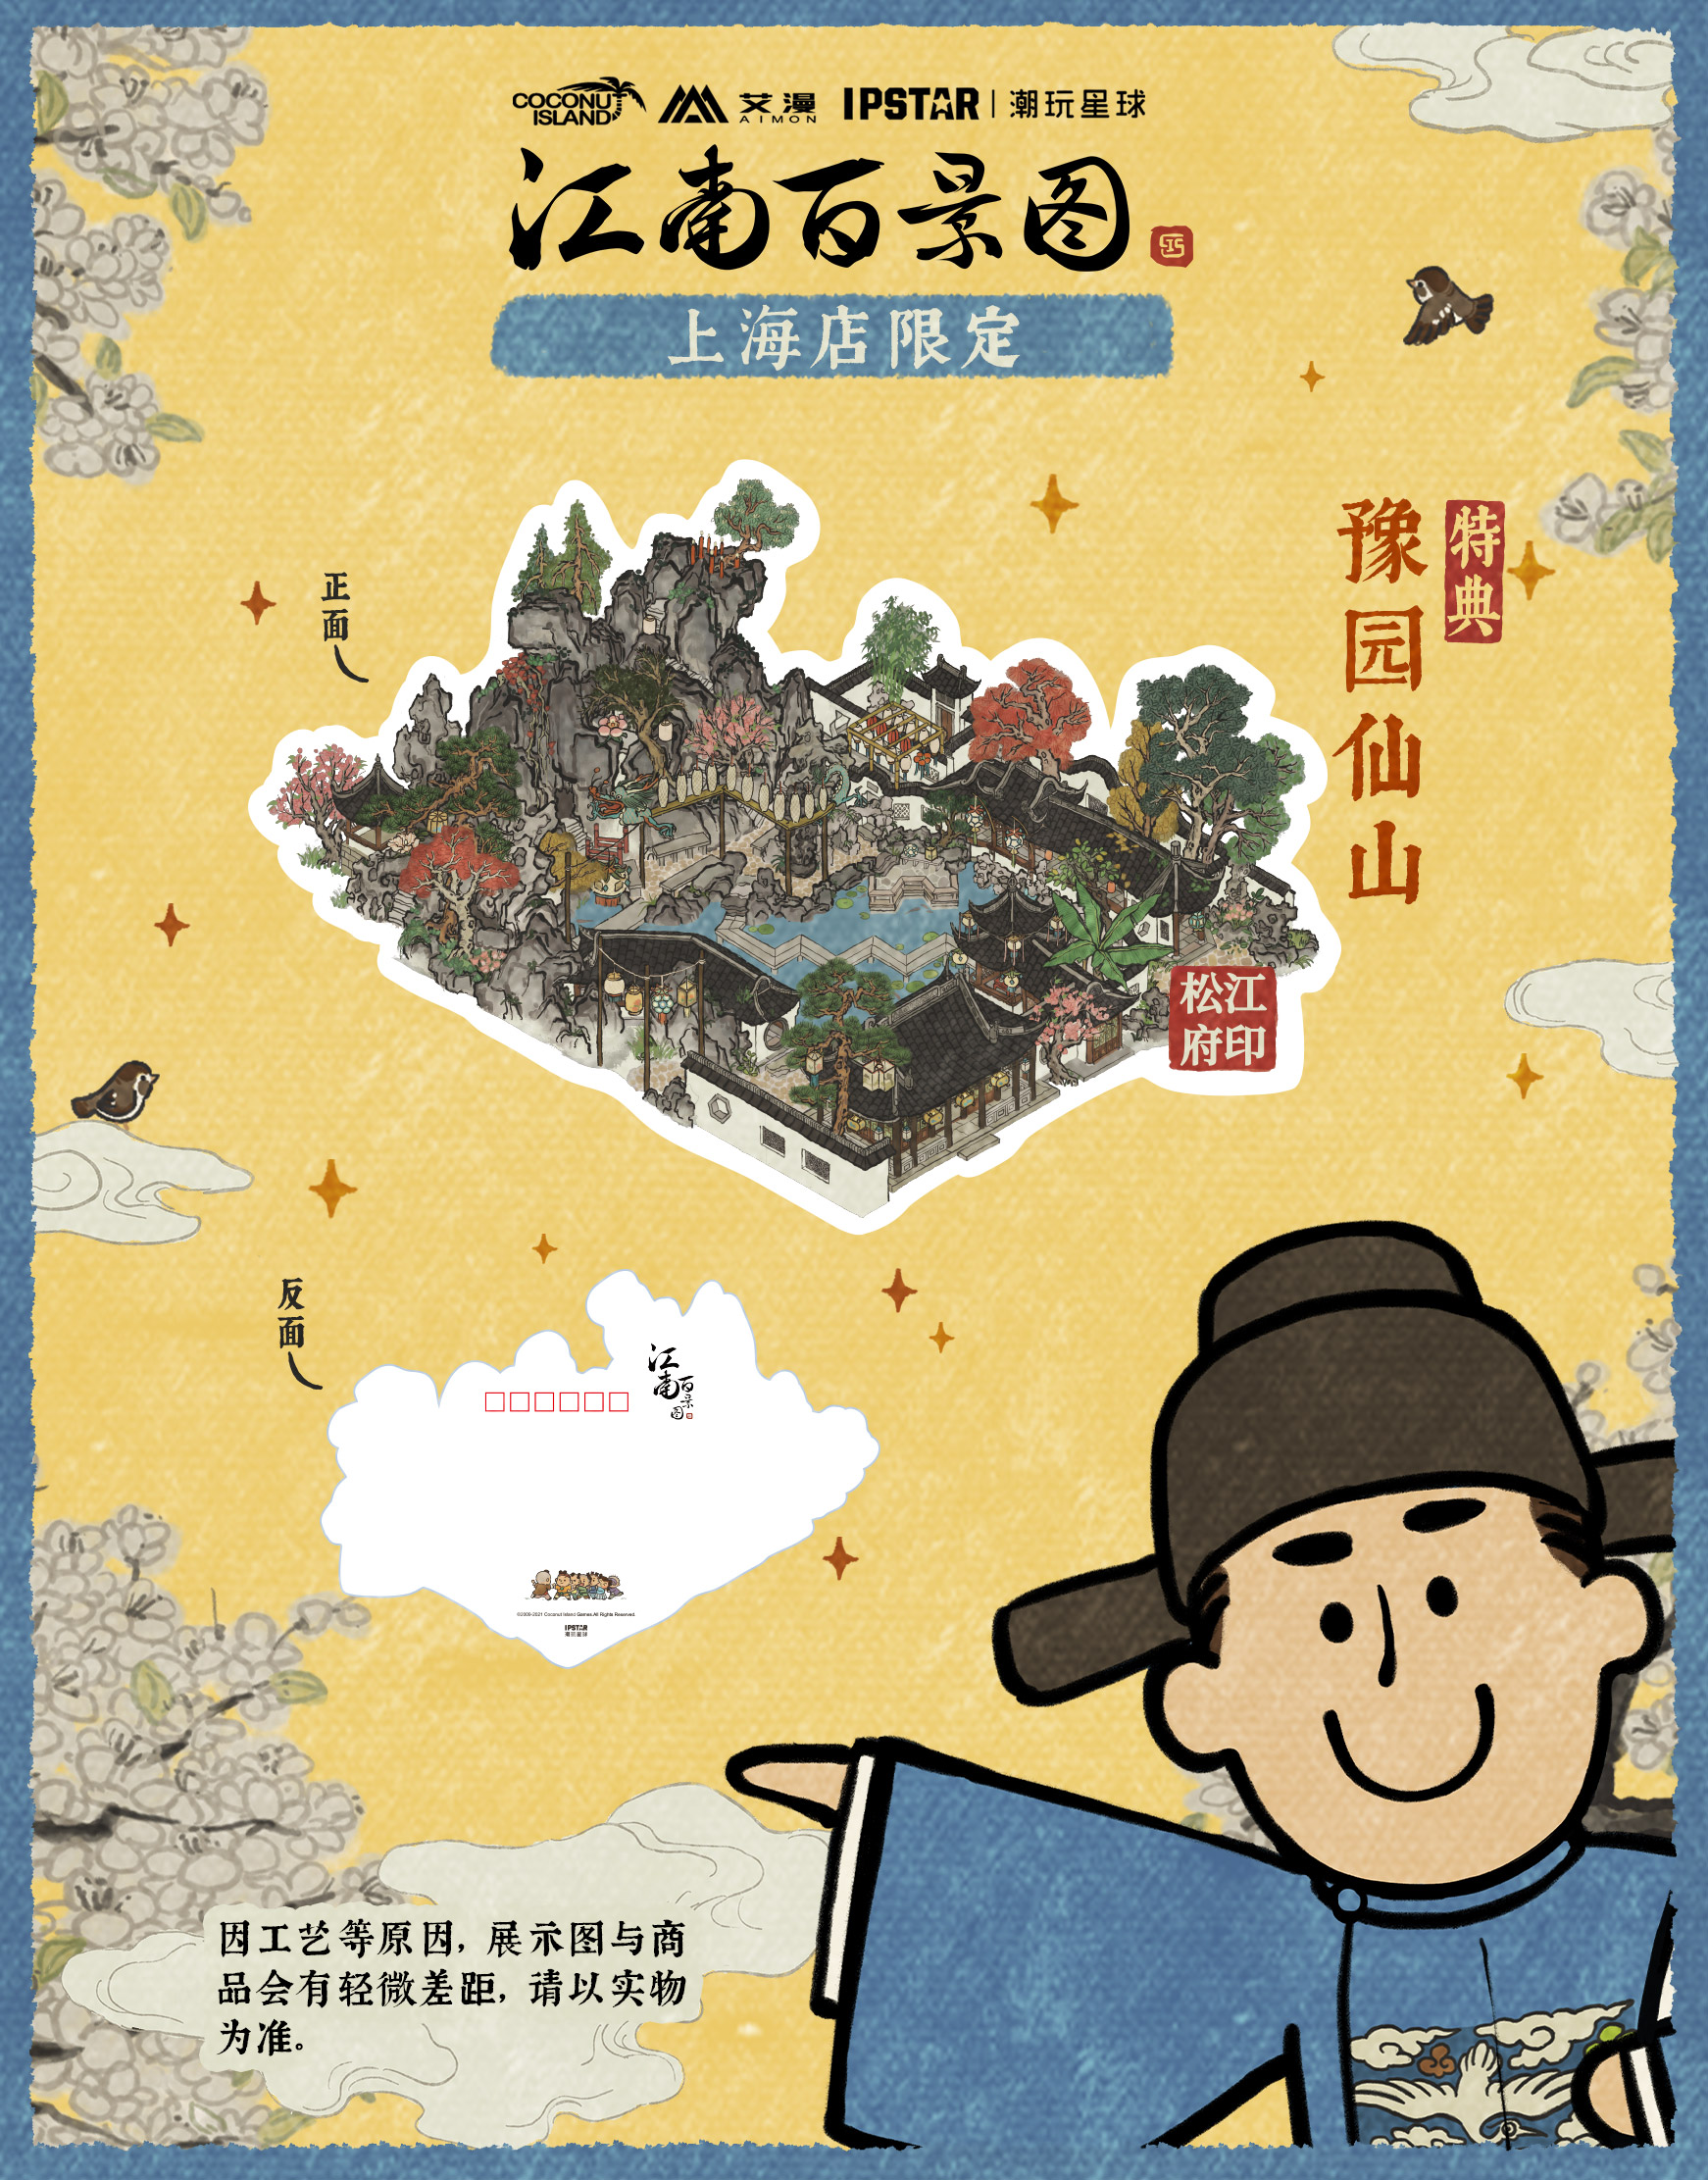 《江南百景图》授权主题餐饮店5月1日上海开业！活动情报全公开